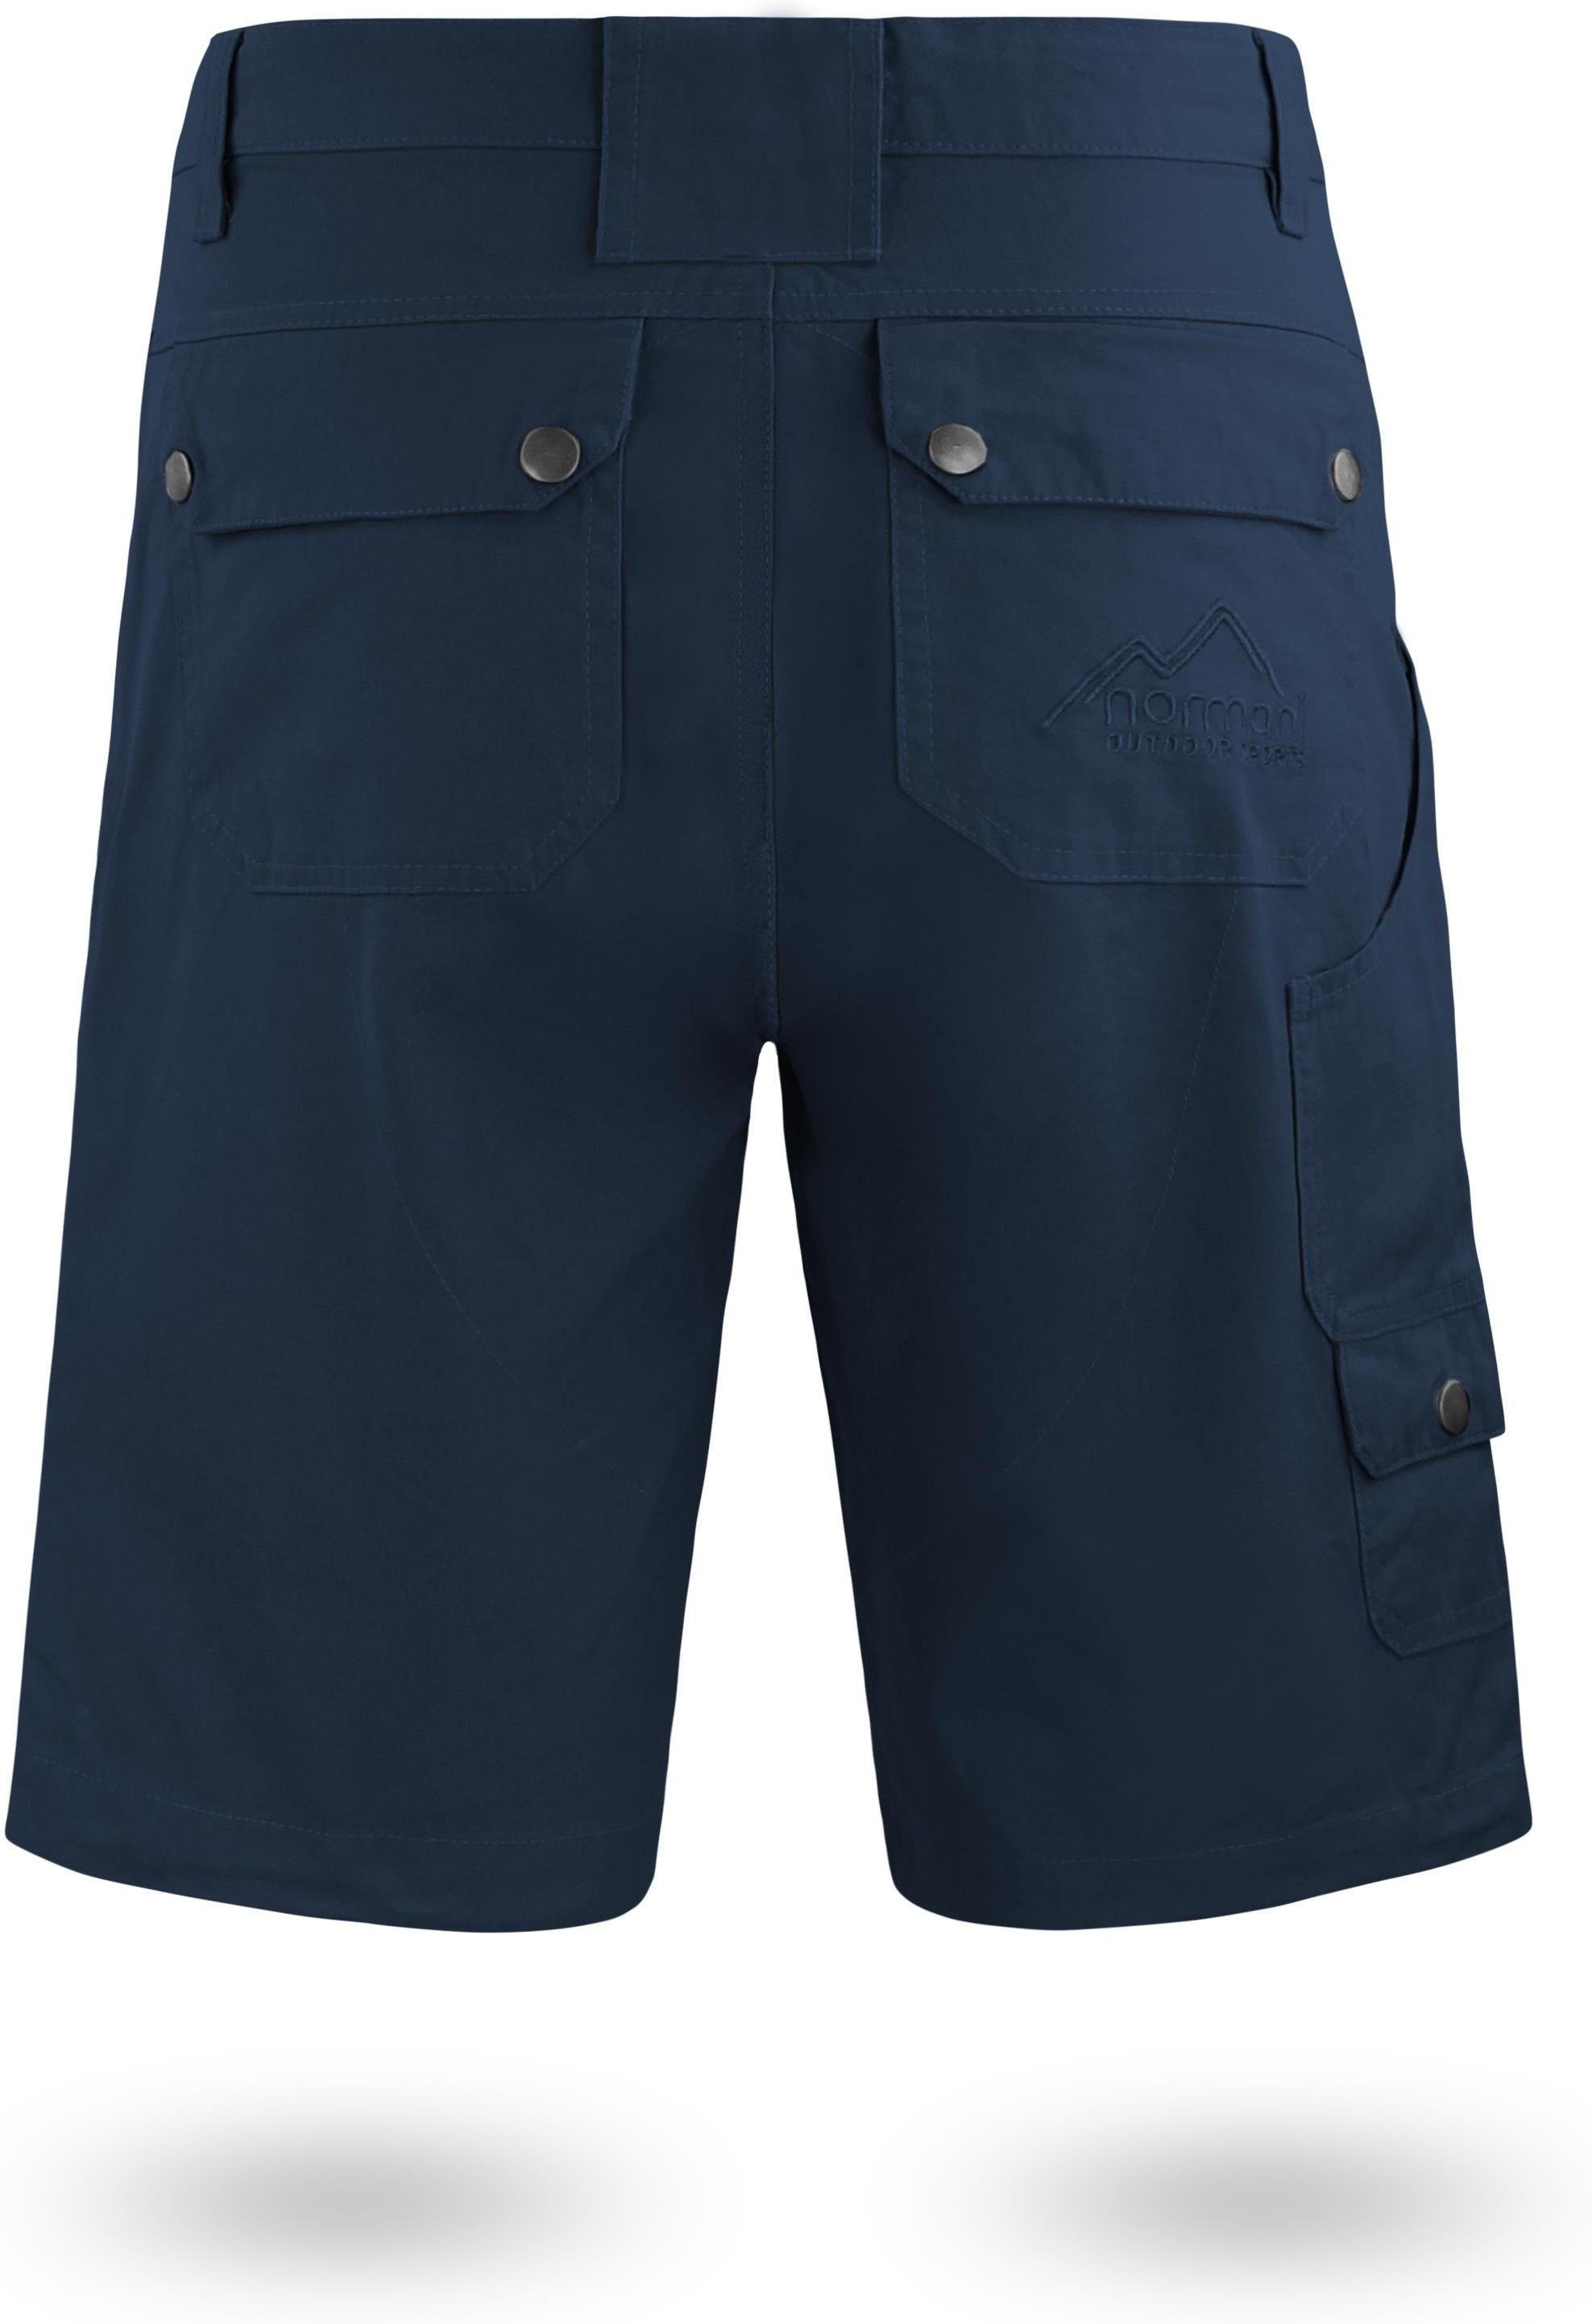 normani Bermudas Sommershorts Cargo-Shorts Taschen Mojave kurze Bio-Baumwolle mit Herren Shorts aus Arbeitsshorts Navy 100% diversen